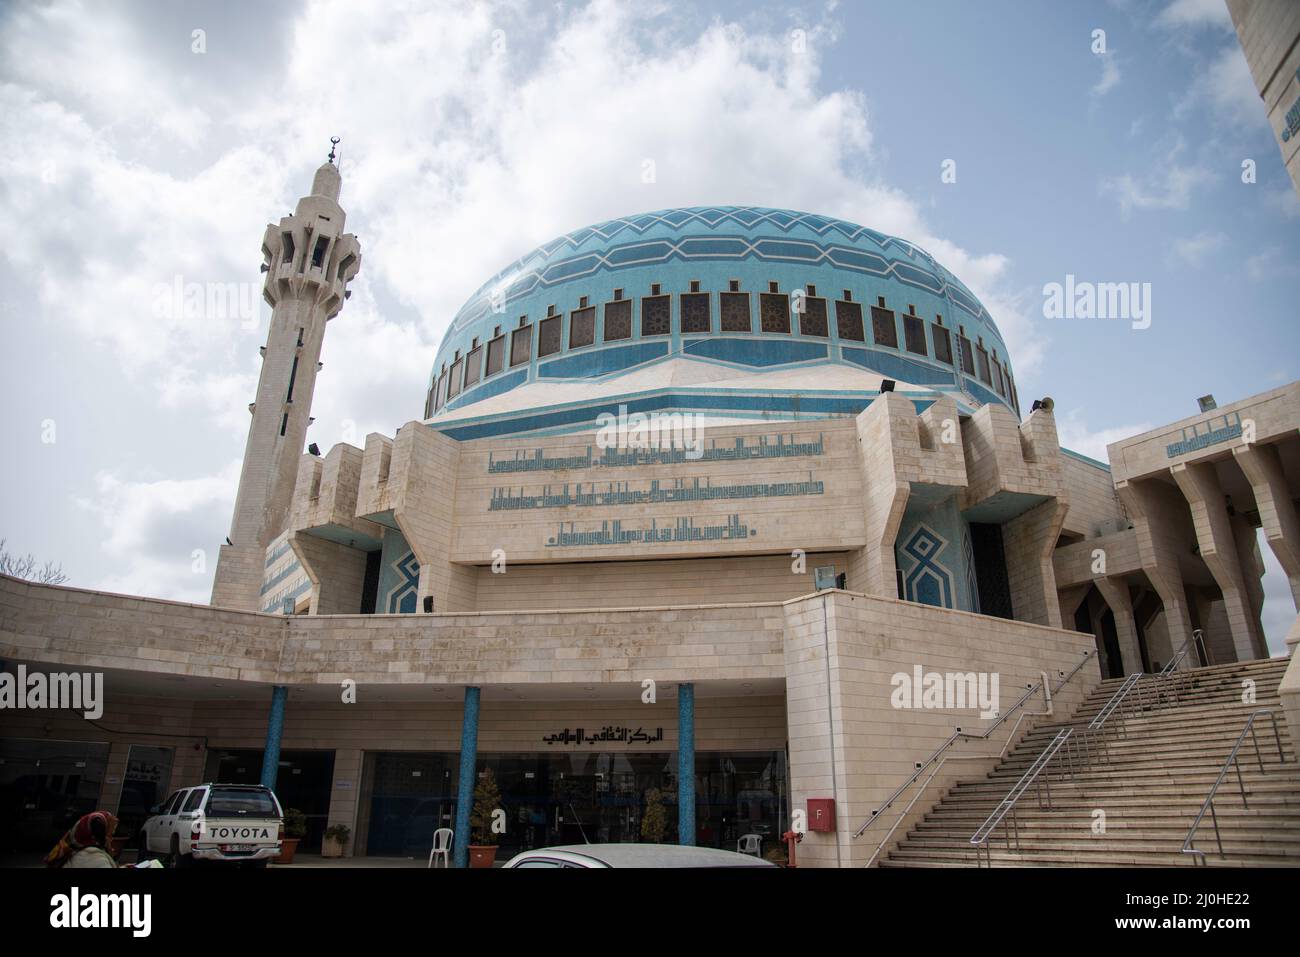 La mezquita del Rey Abdalá I es una mezquita en Amán la capital de Jordania. Toma el nombre del rey jordano Abdalá I y fue construida entre 1982 y 198 Stock Photo